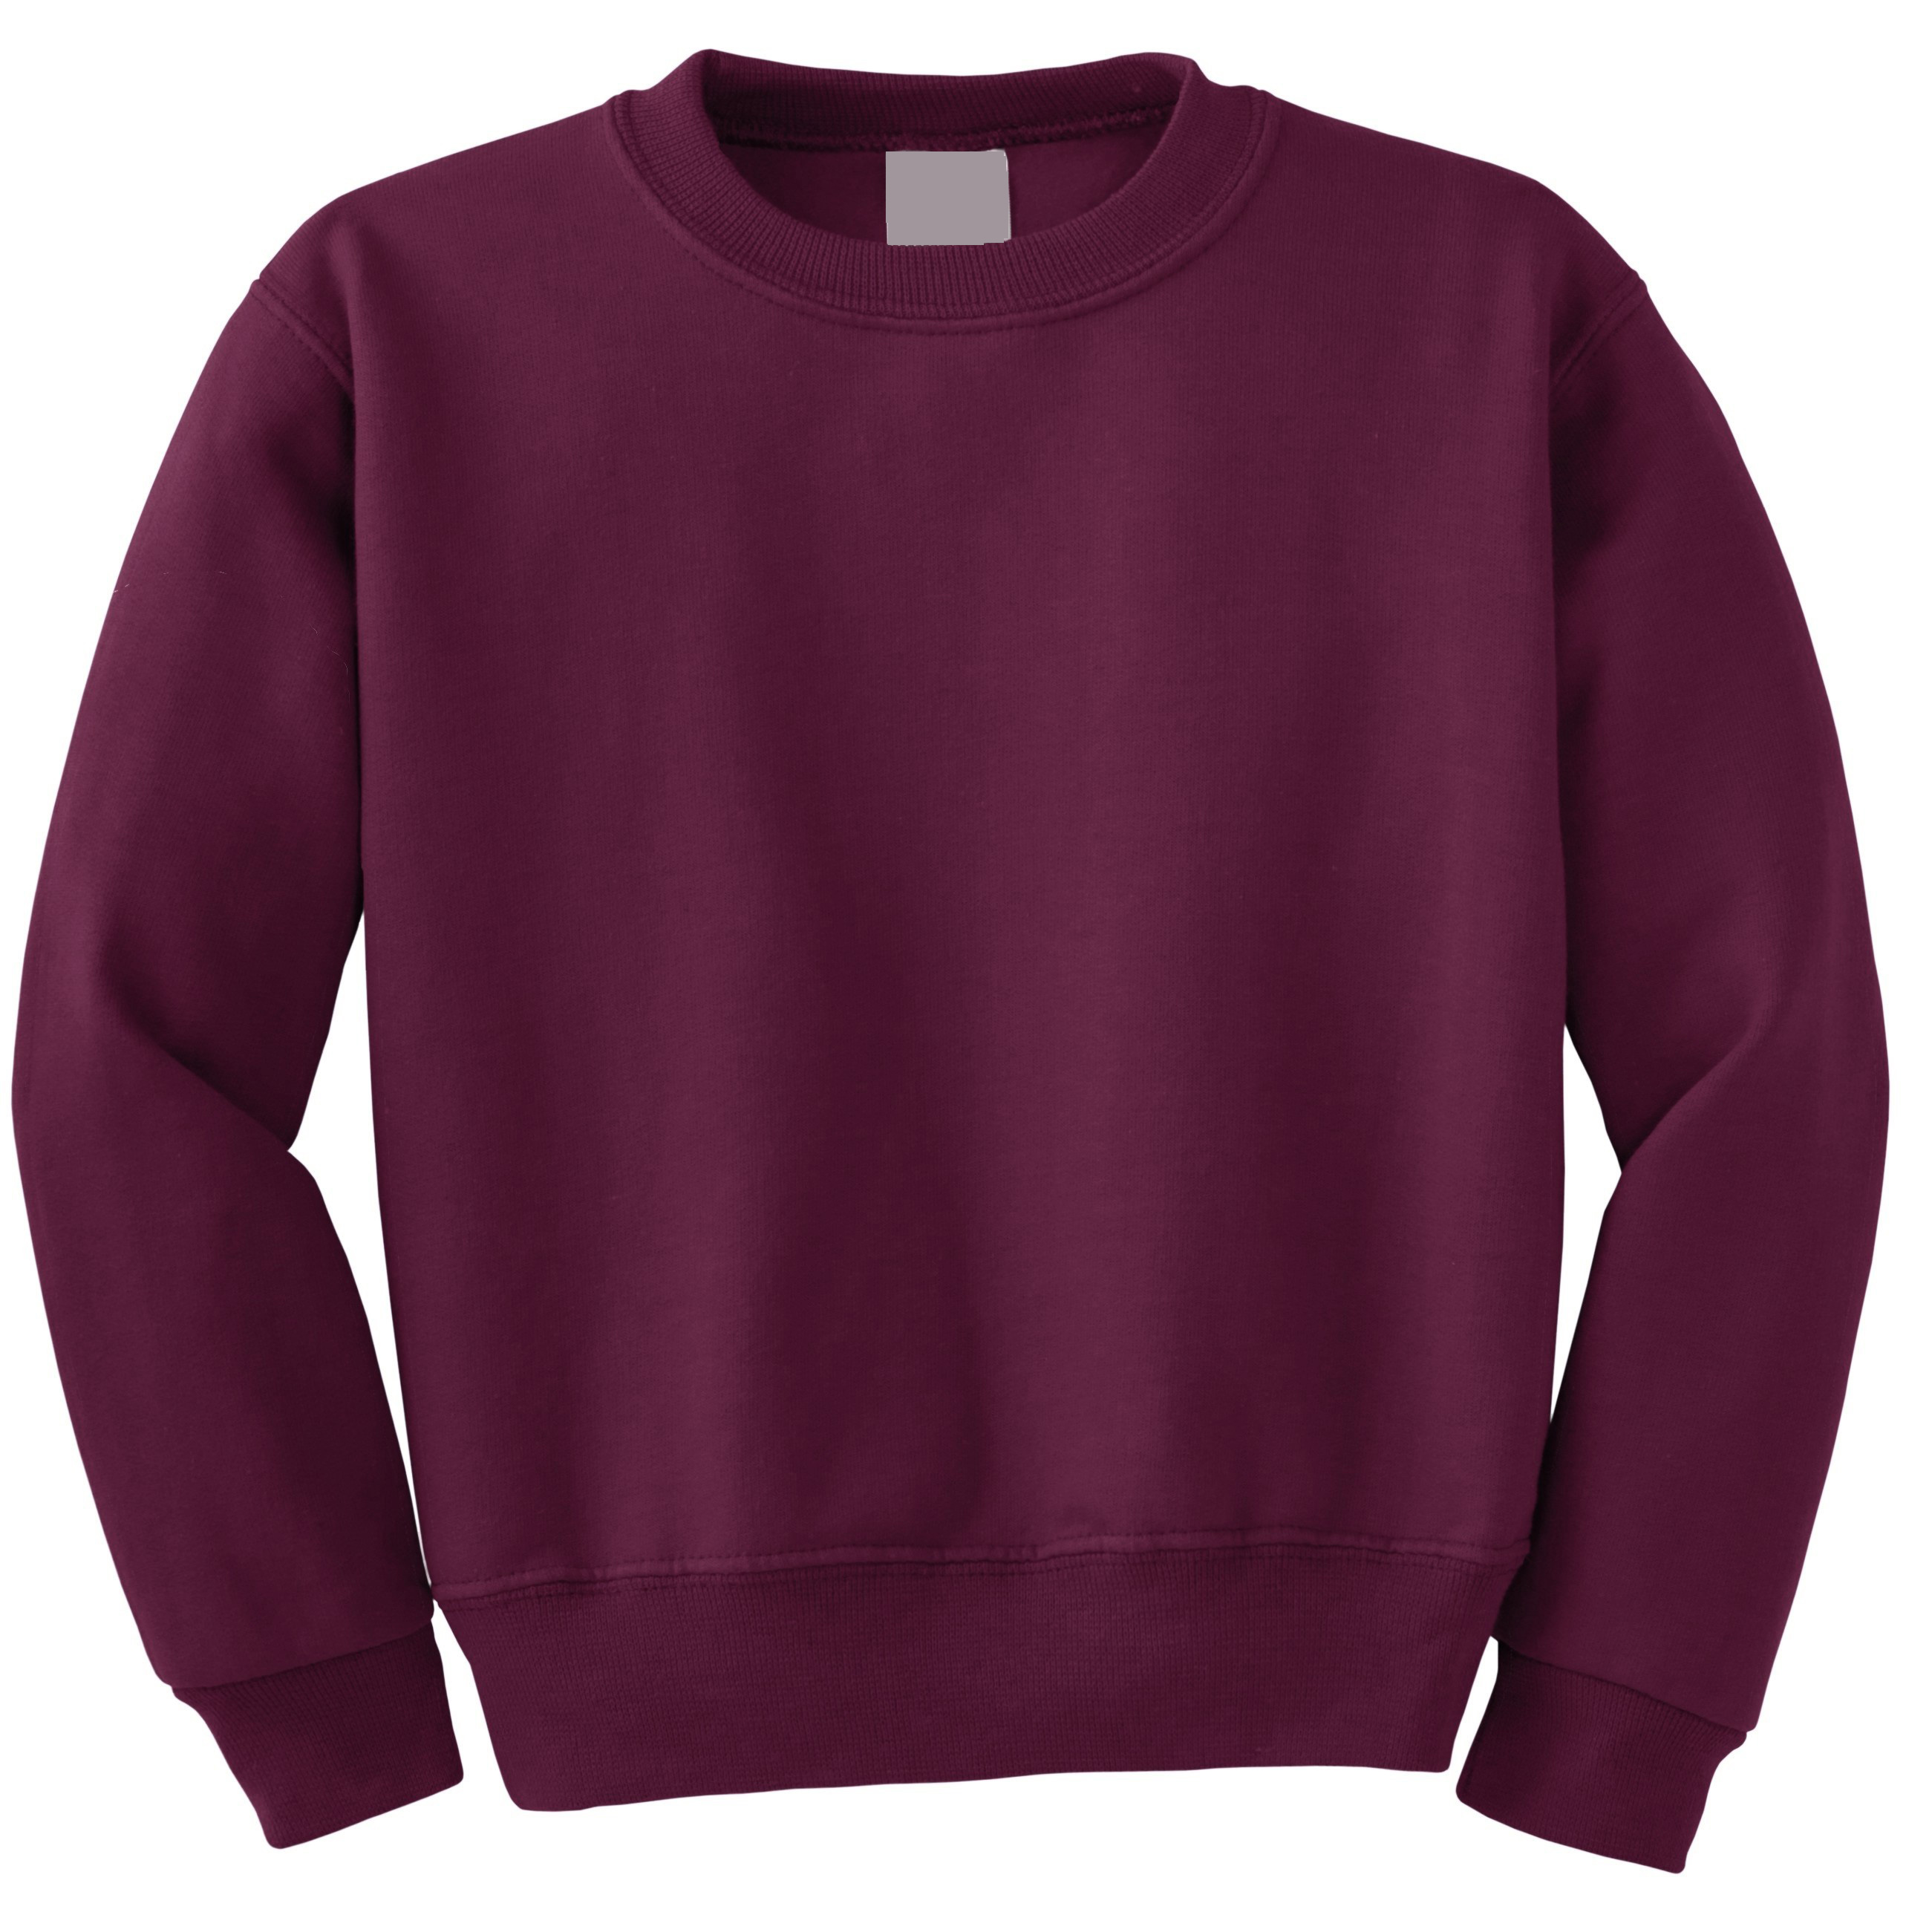 burgundy sweatshirt